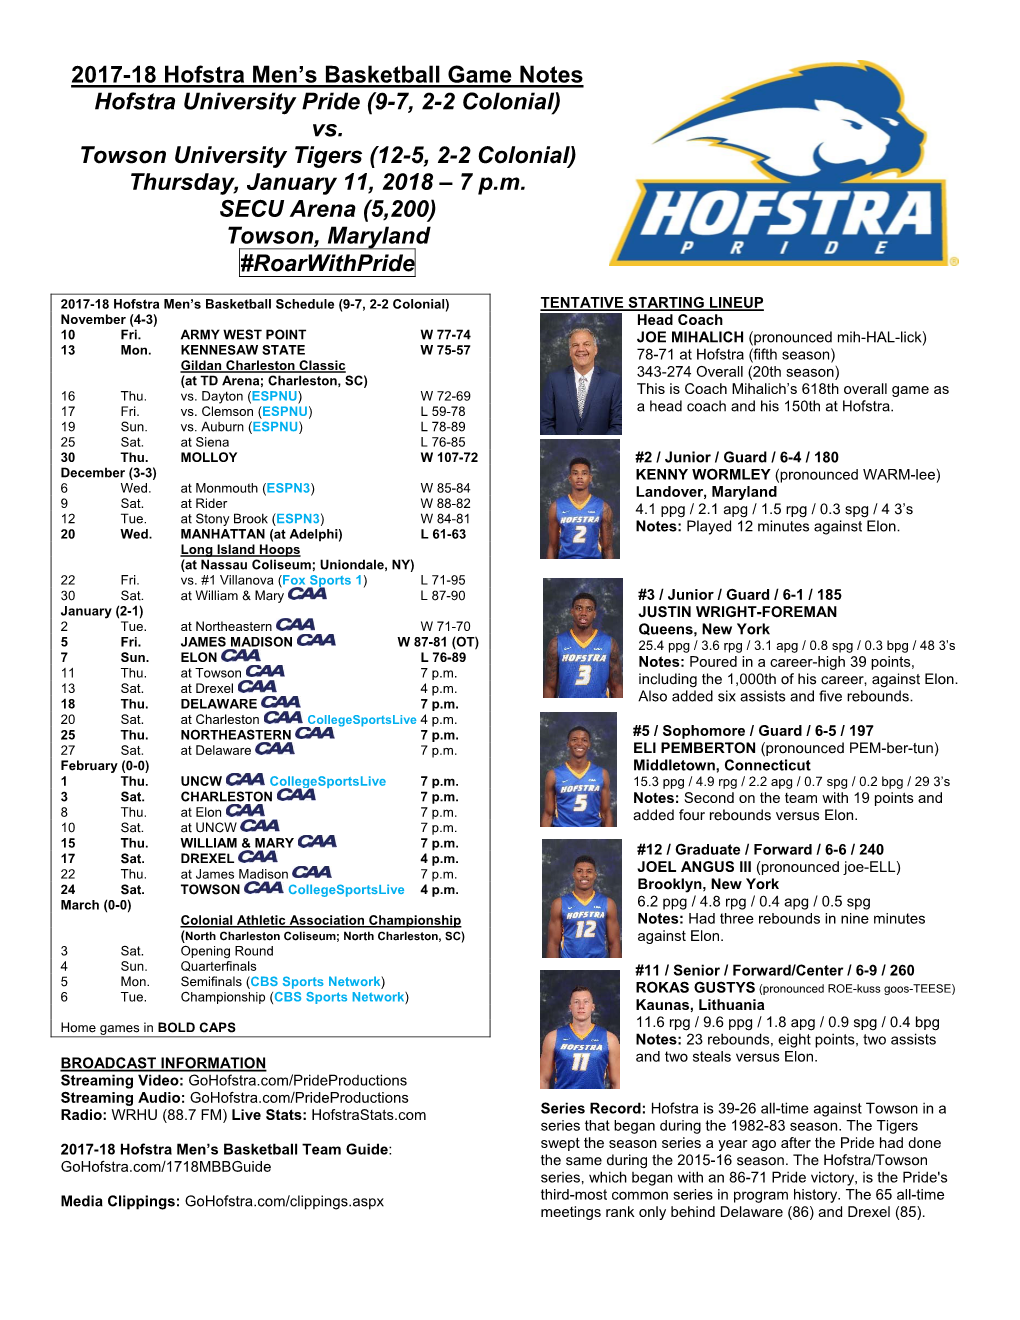 2017-18 Hofstra Men's Basketball Game Notes Hofstra University